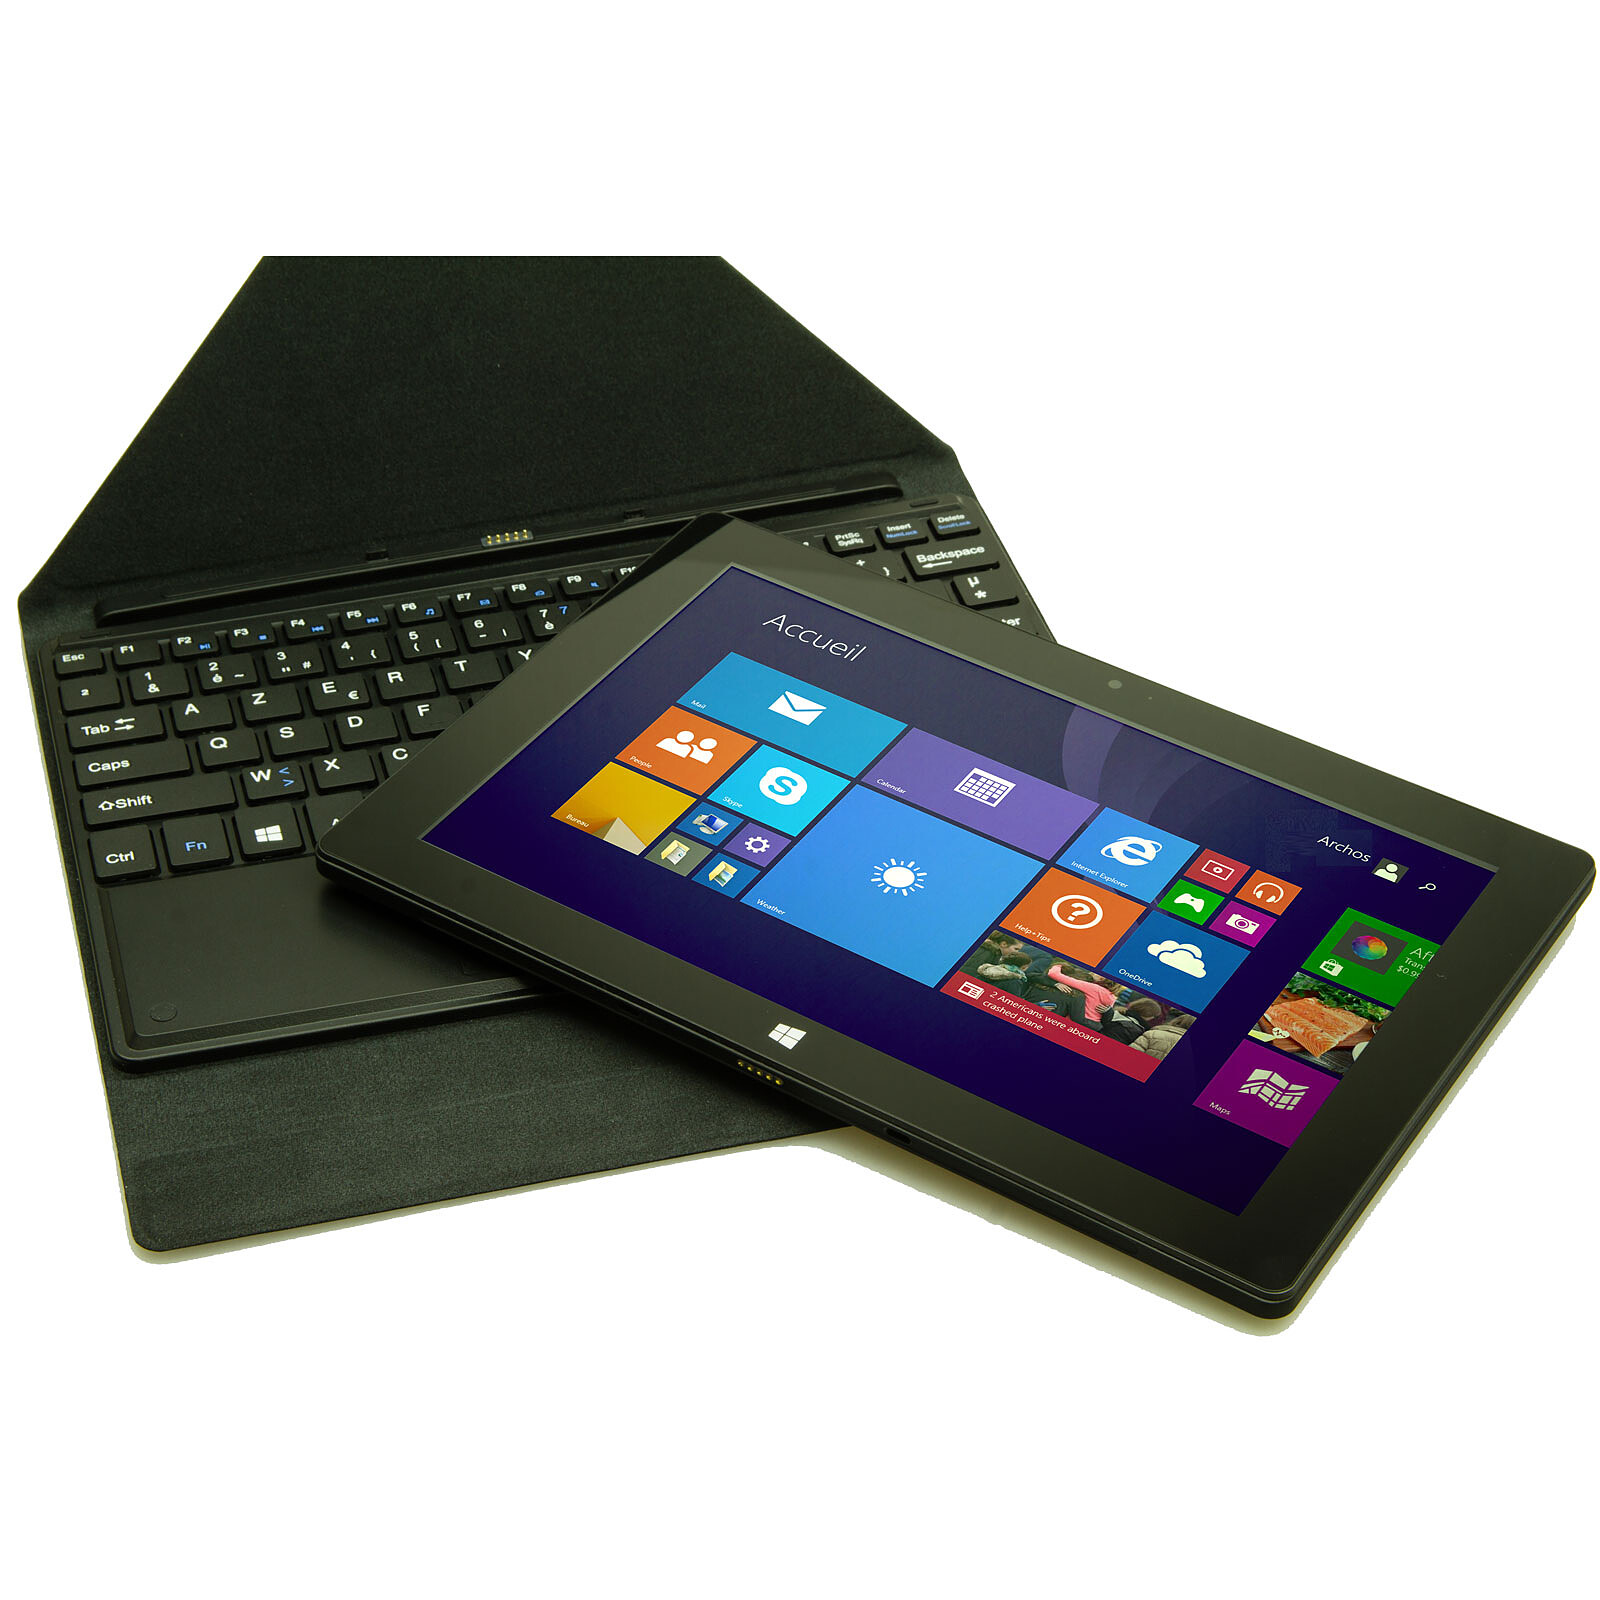 Storex Wind'Tab 101, la tablette Windows 10 avec clavier